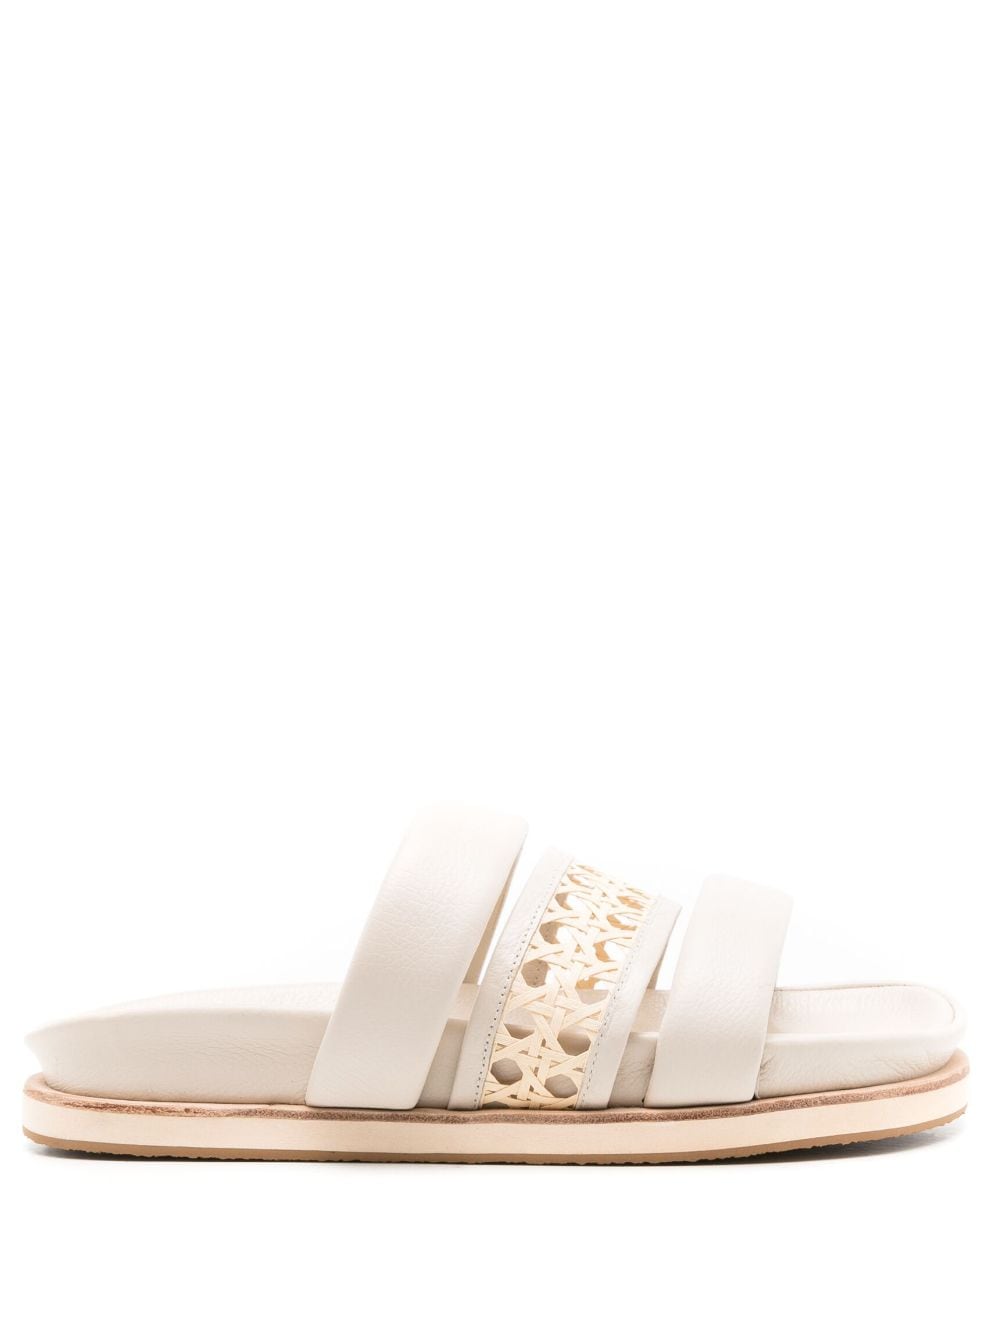 MISCI Carriola wicker-strap sandals - White von MISCI